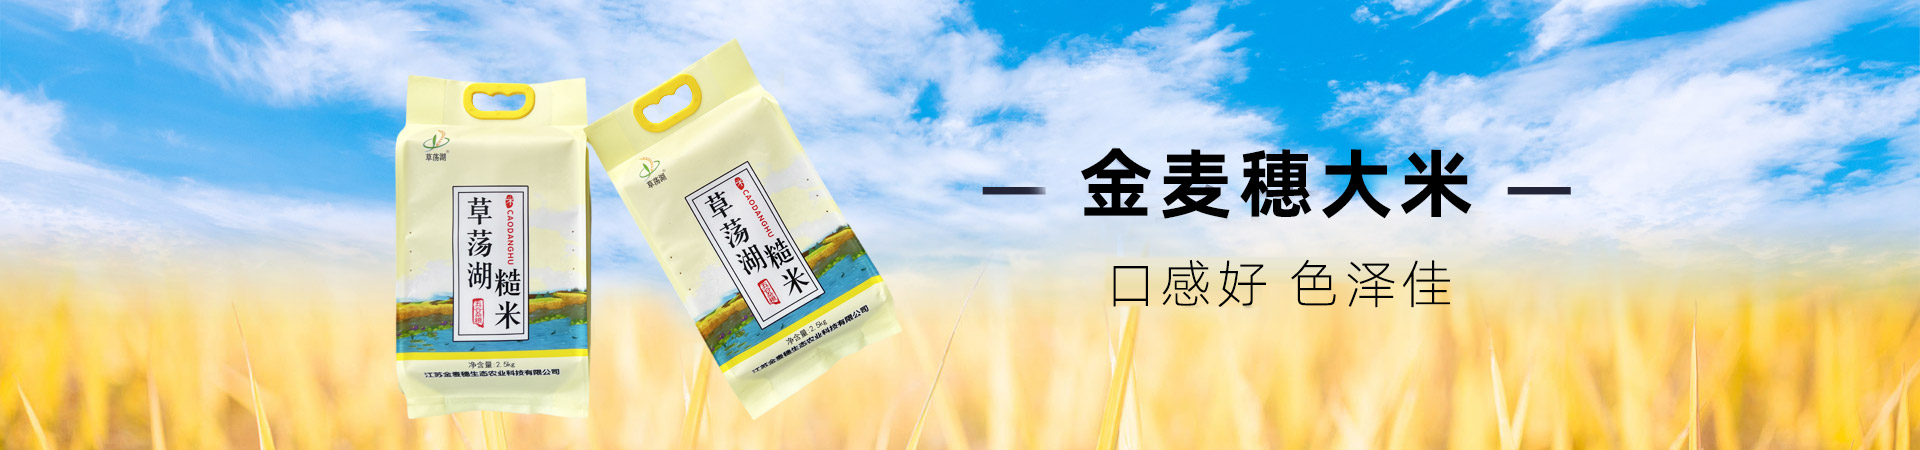 江苏金麦穗生态农业科技有限公司